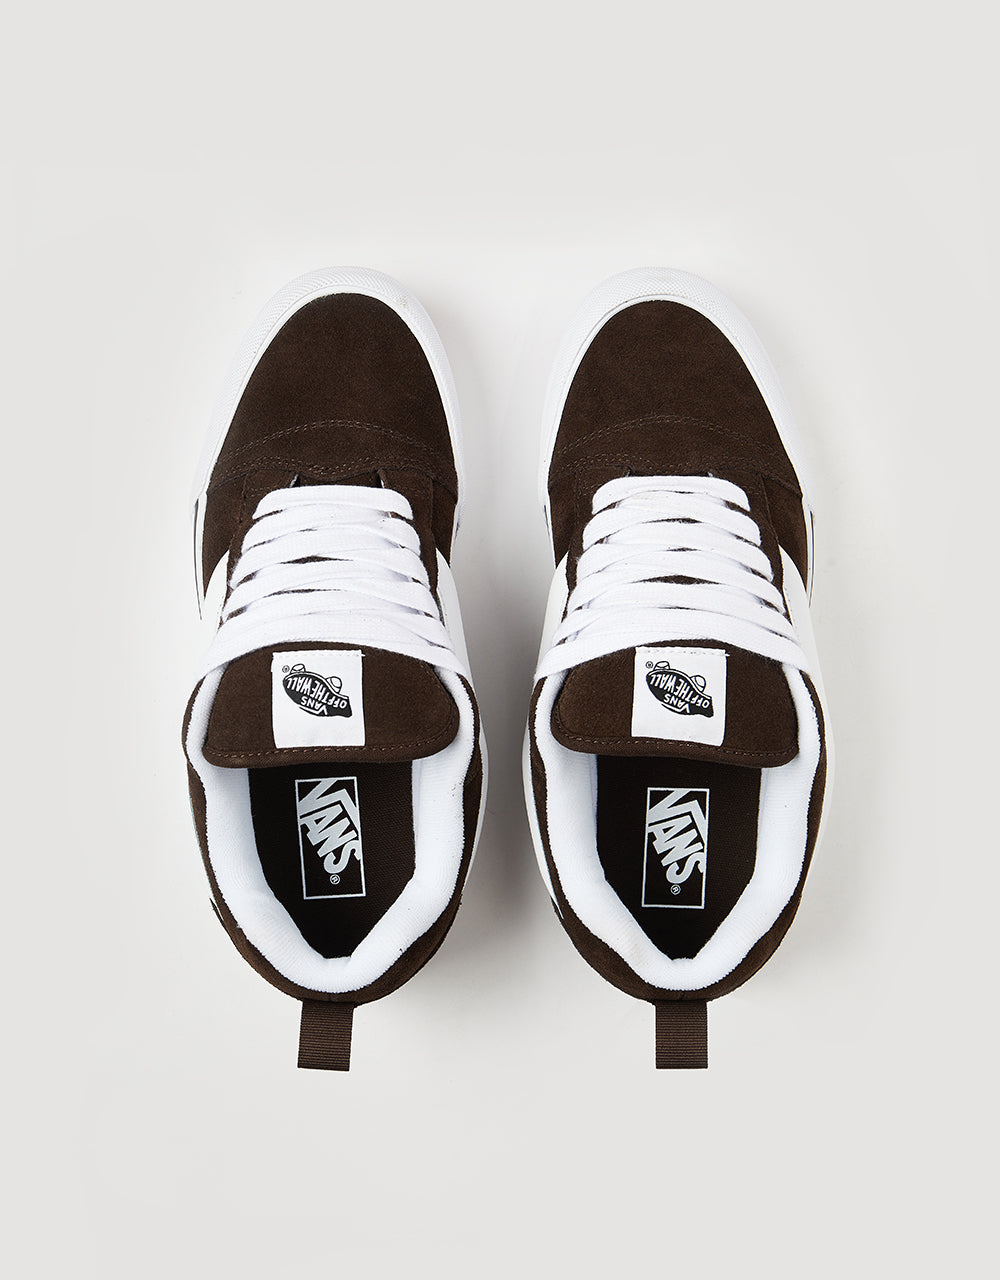 Vans Knu Skool Skate Shoes - Brown/White